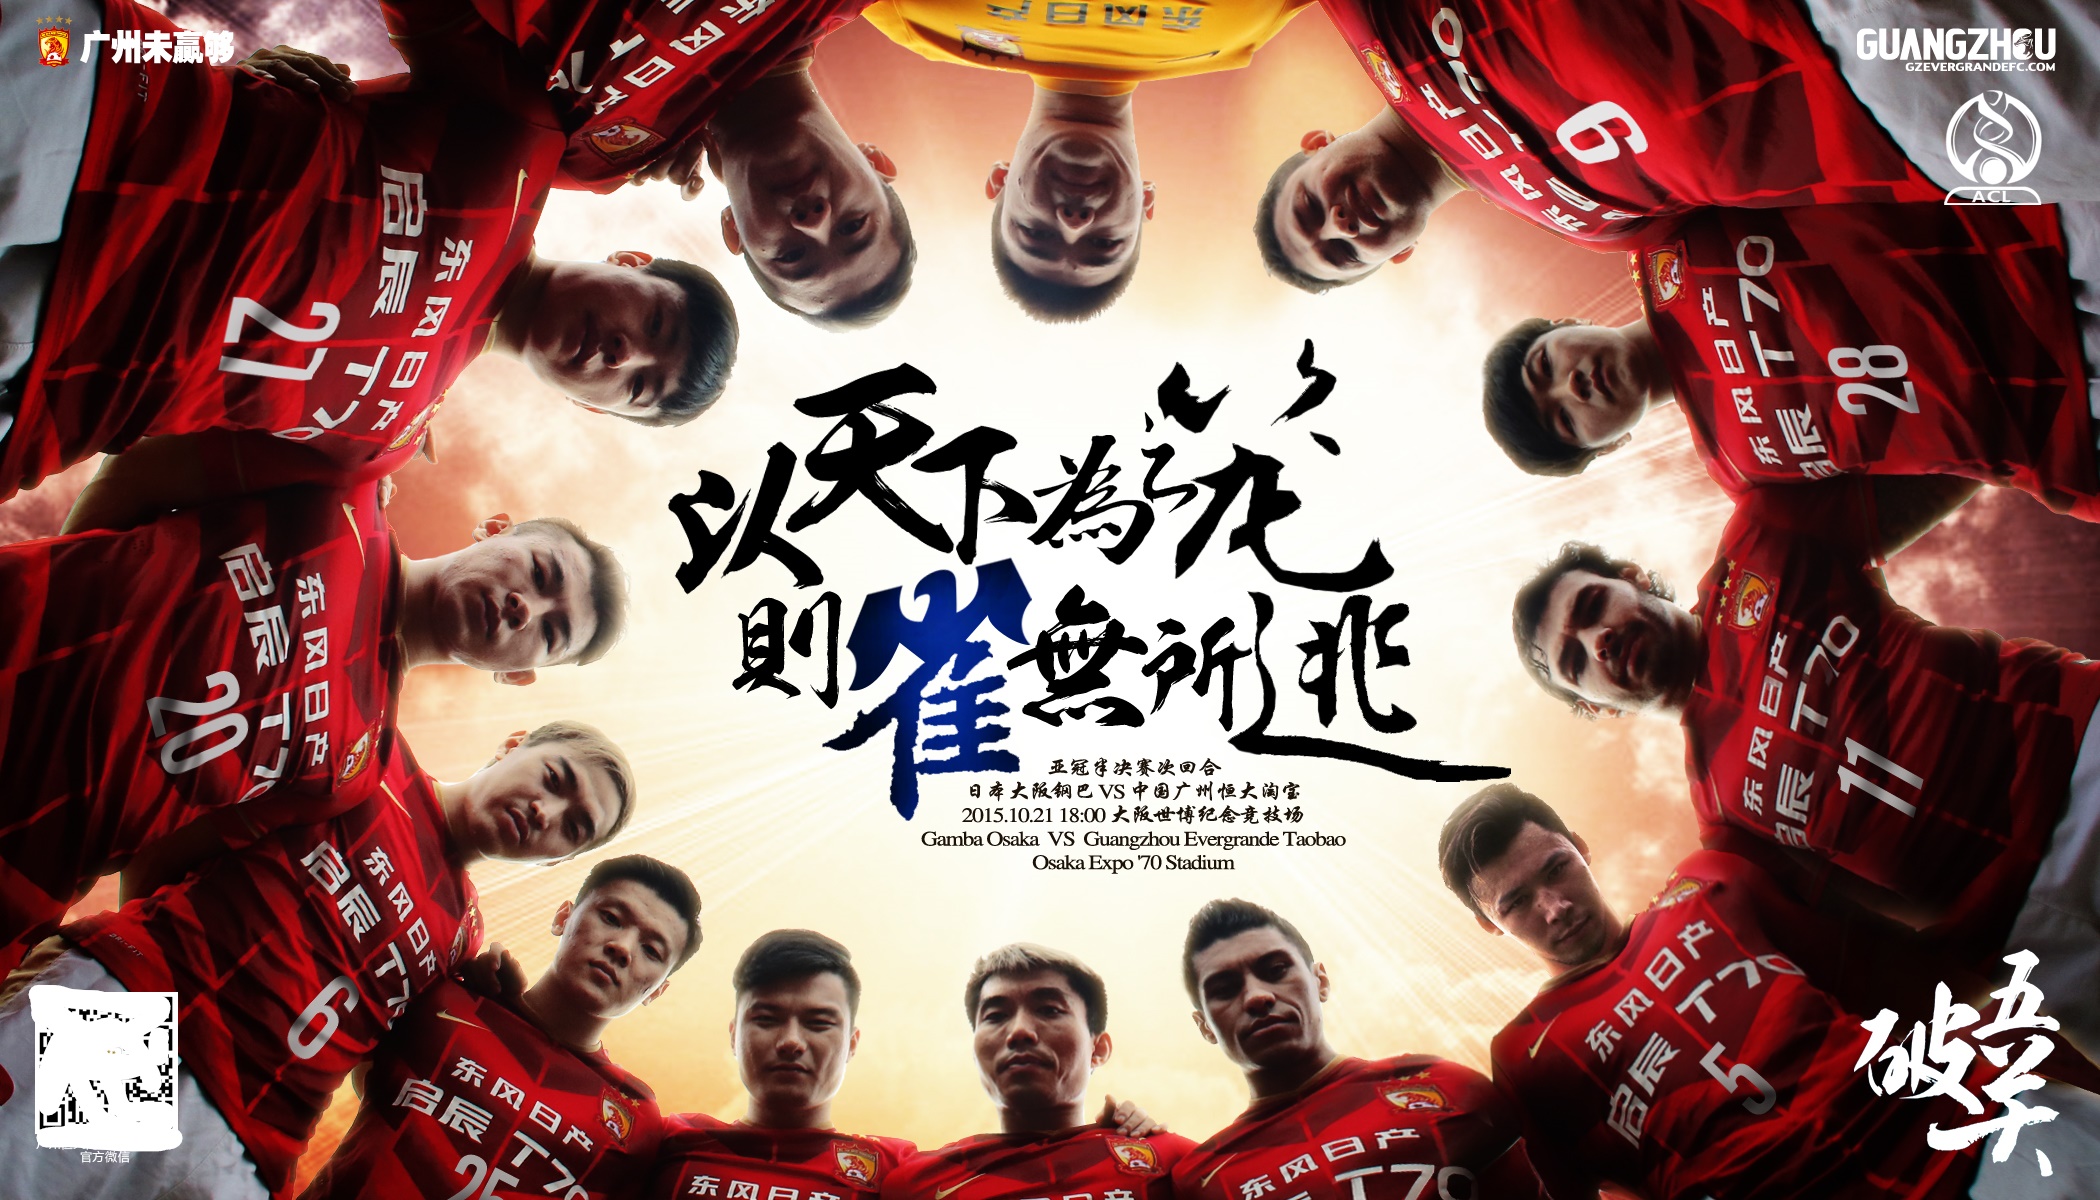 2015年亚冠决赛颁奖(三年二次夺亚冠冠军的广州恒大2015年亚冠夺冠历程-海报回顾)